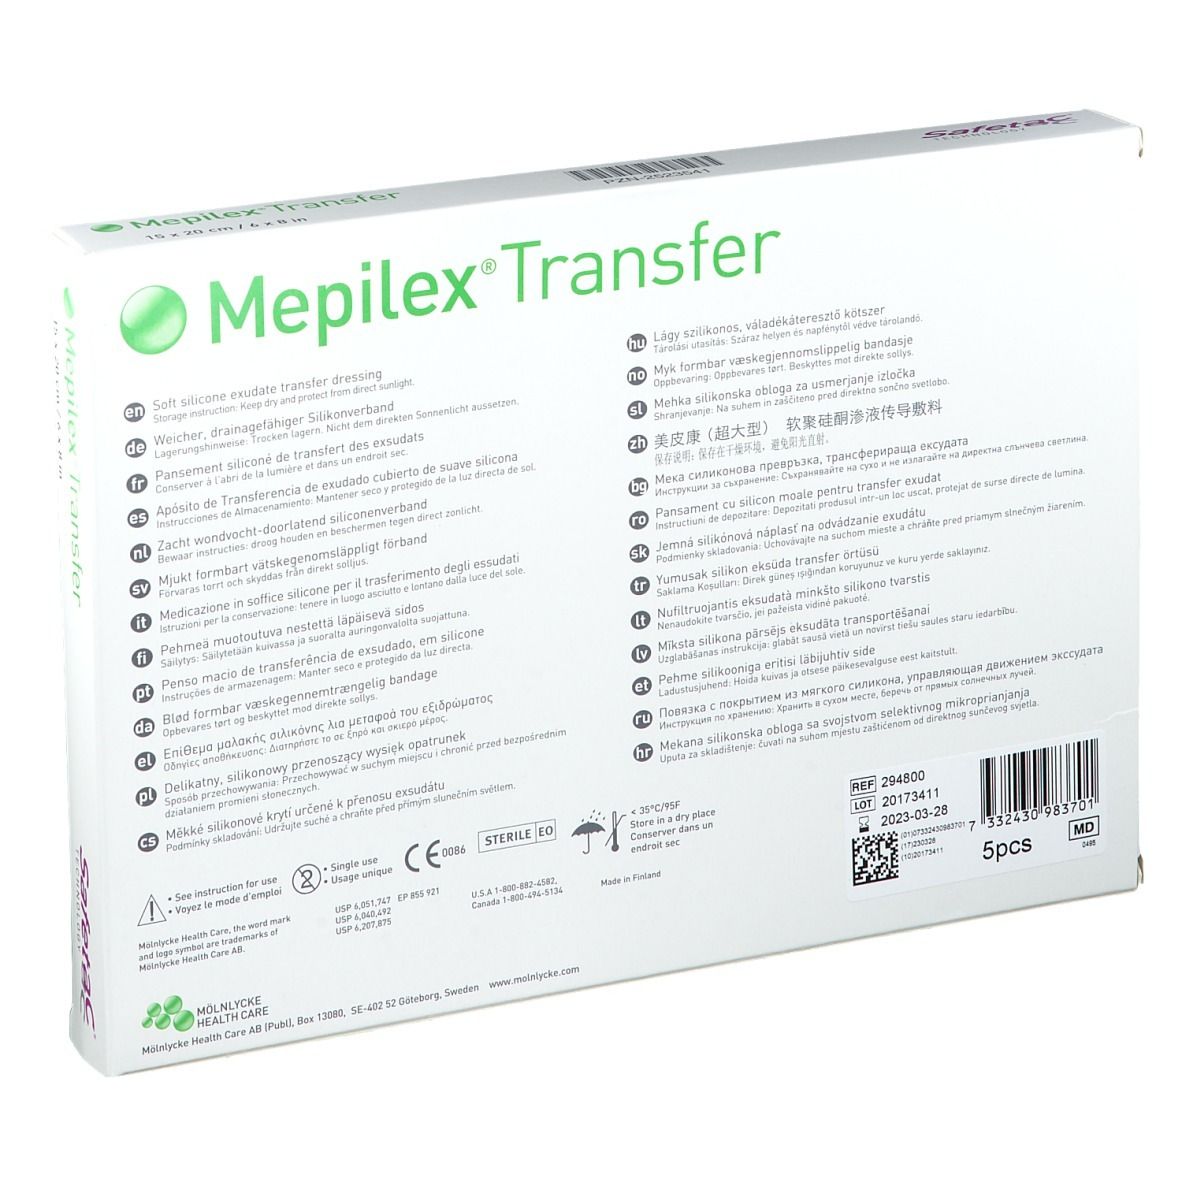 Mepilex® Transfer Verbände  15 x 20 cm steril